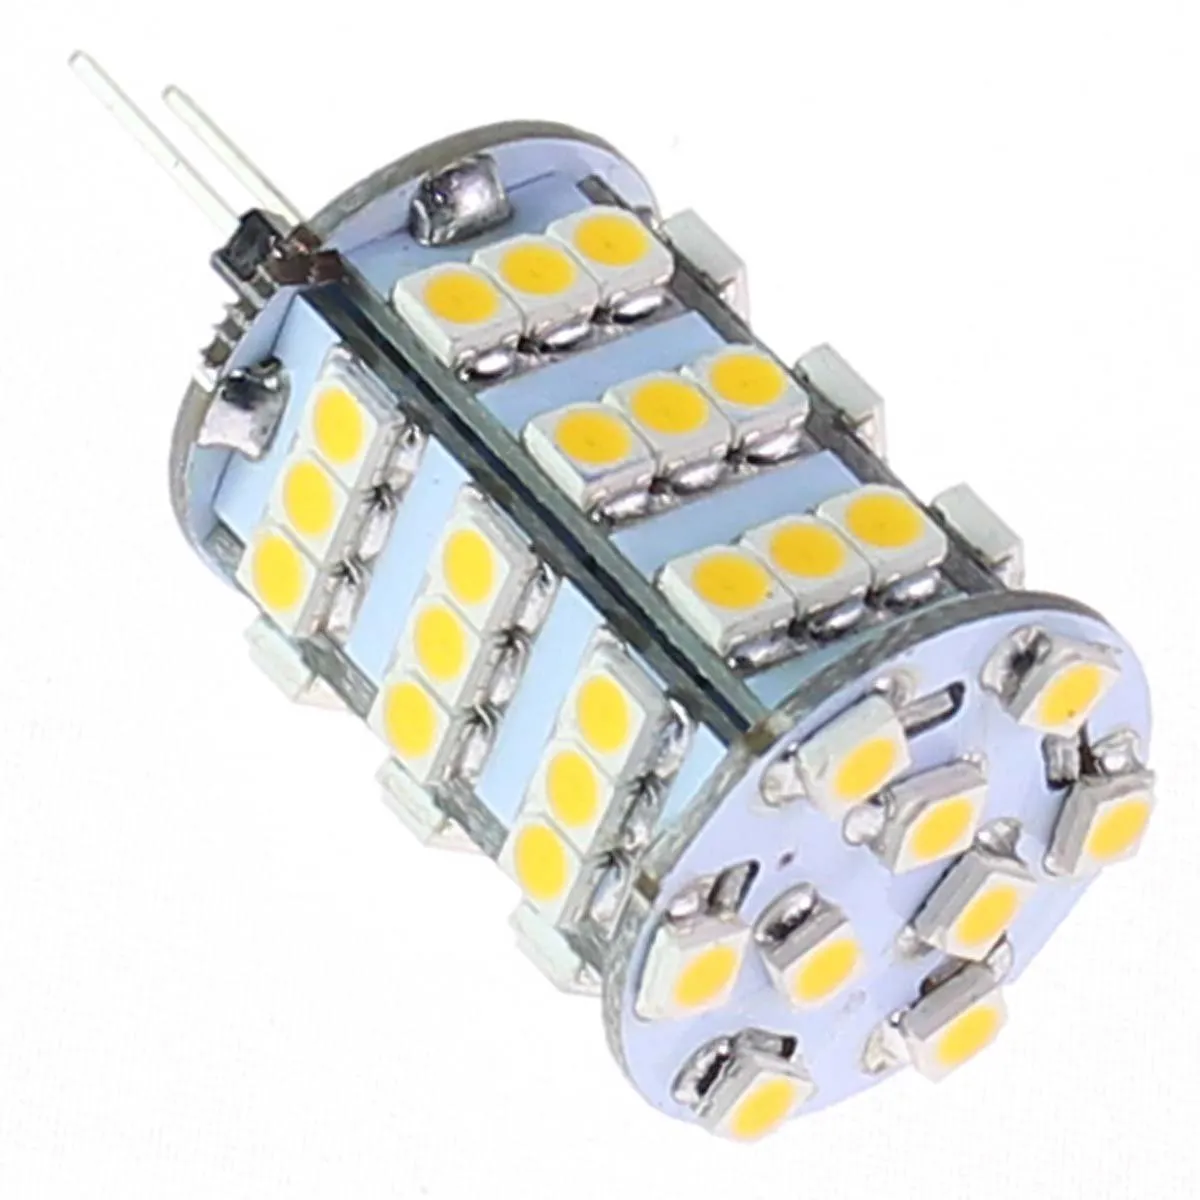 LED 전구 RV LED 조명 G4 300 루멘 120 SMD 3528 수직 핀 조명 해양 보트 램프